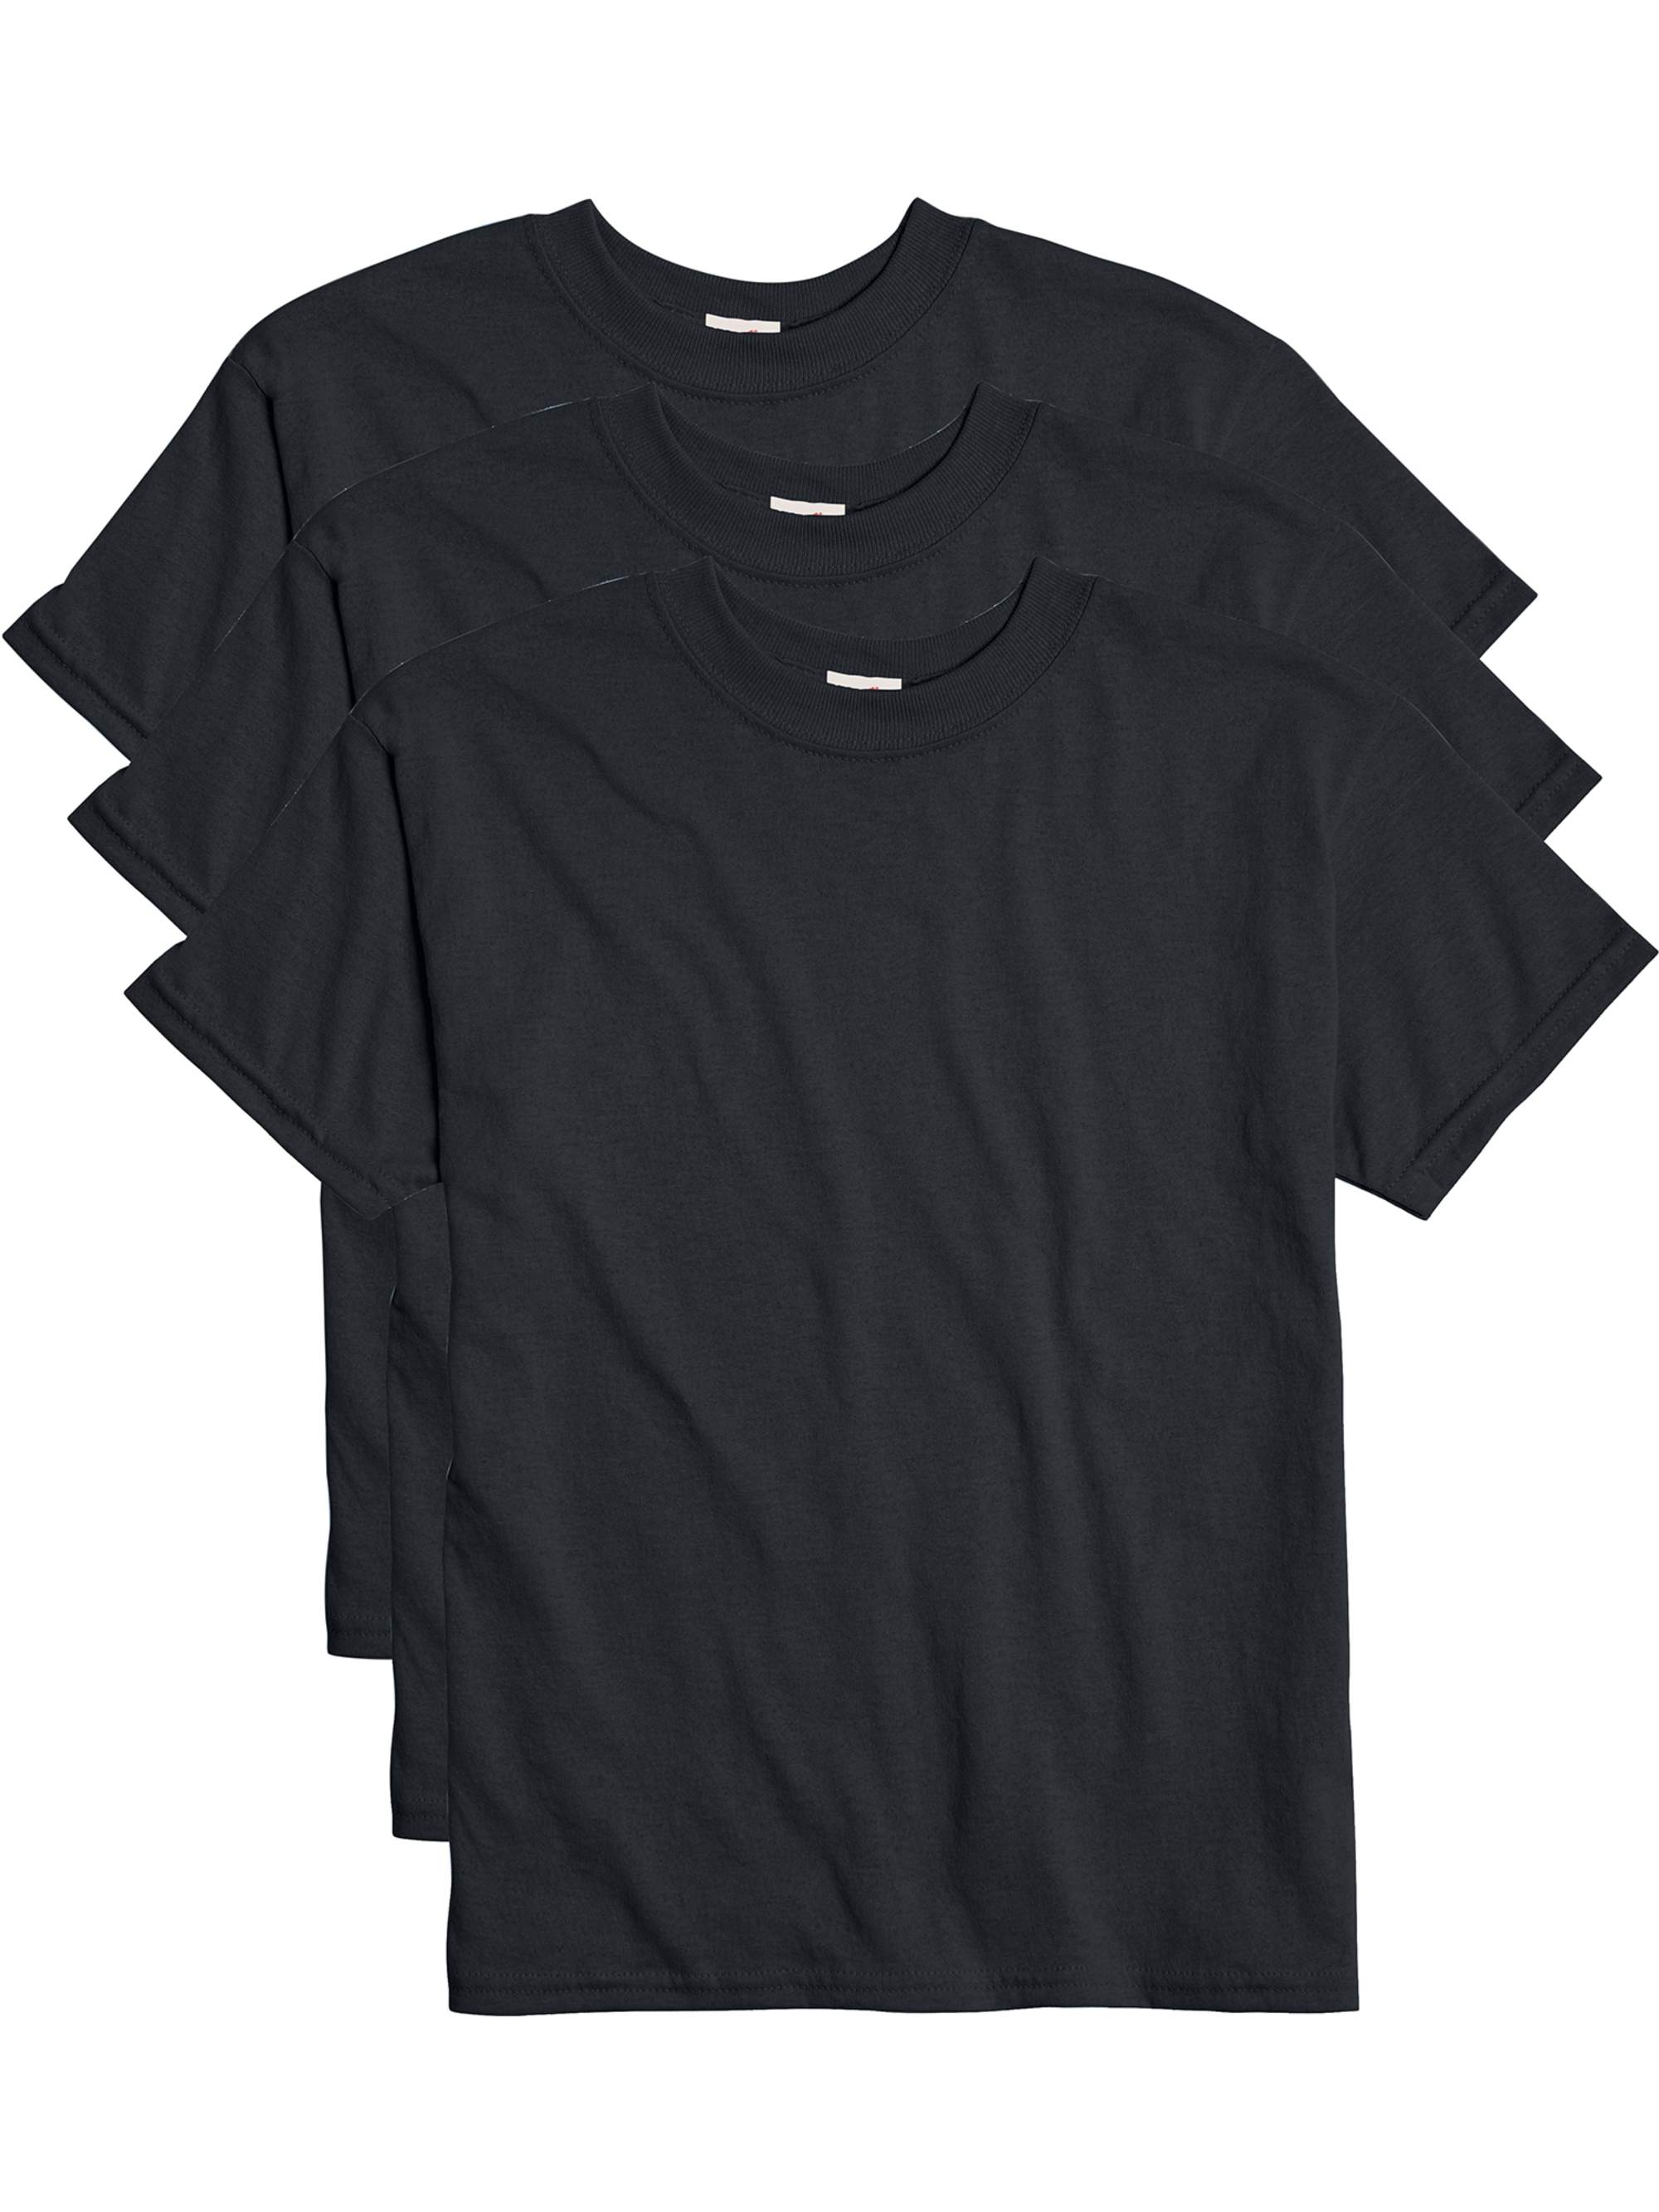 Hanes Boys EcoSmart Short Sleeve 3 Pack Tee Shirts, Sizes 6-18 - image 1 of 5